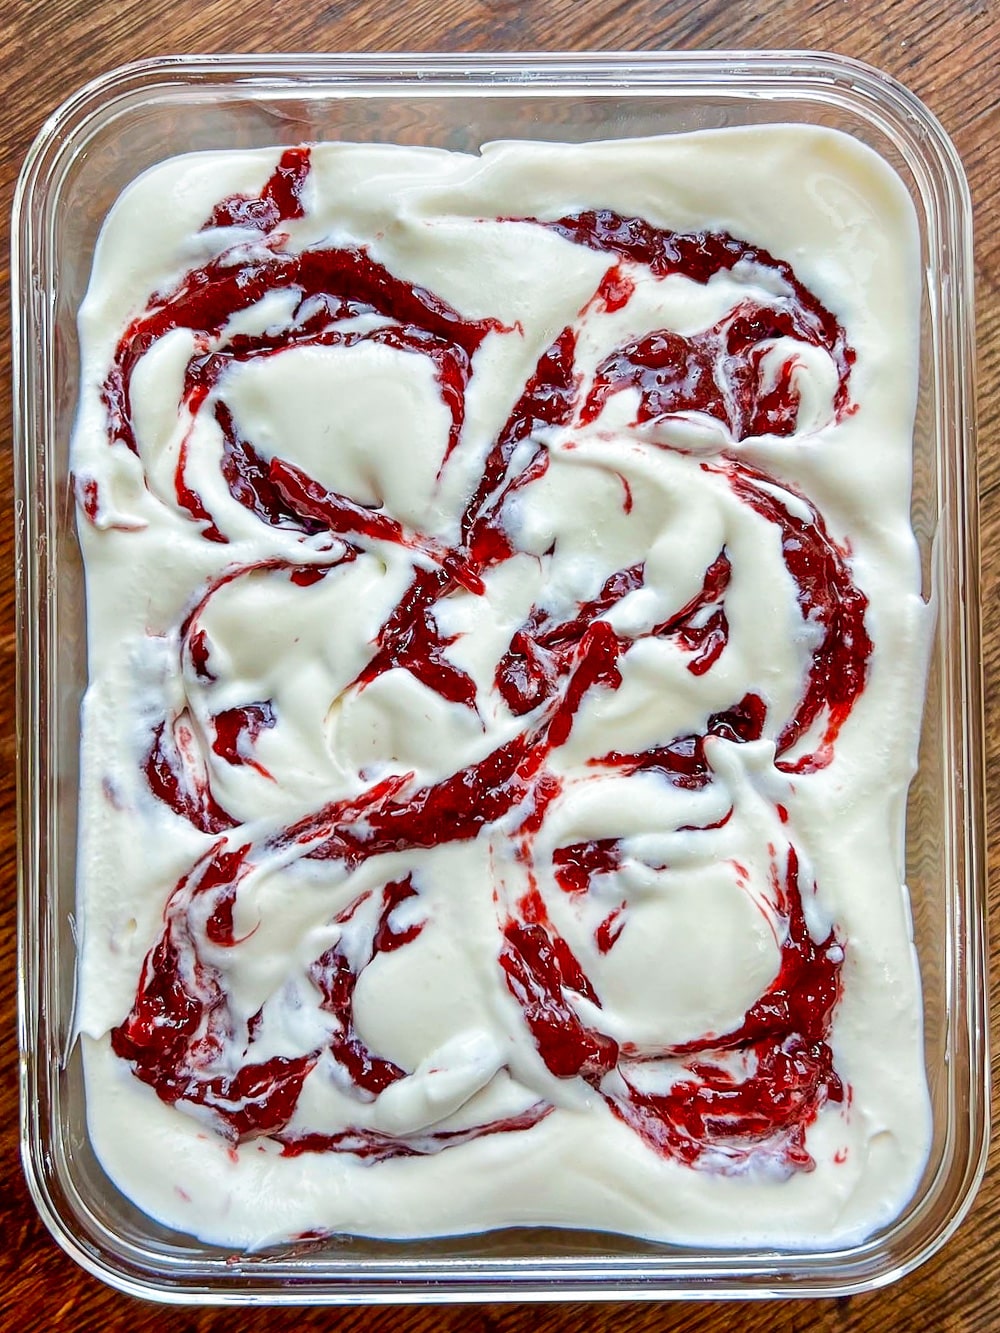 Swirling the jam through No Churn Strawberry Vanilla Ice Cream